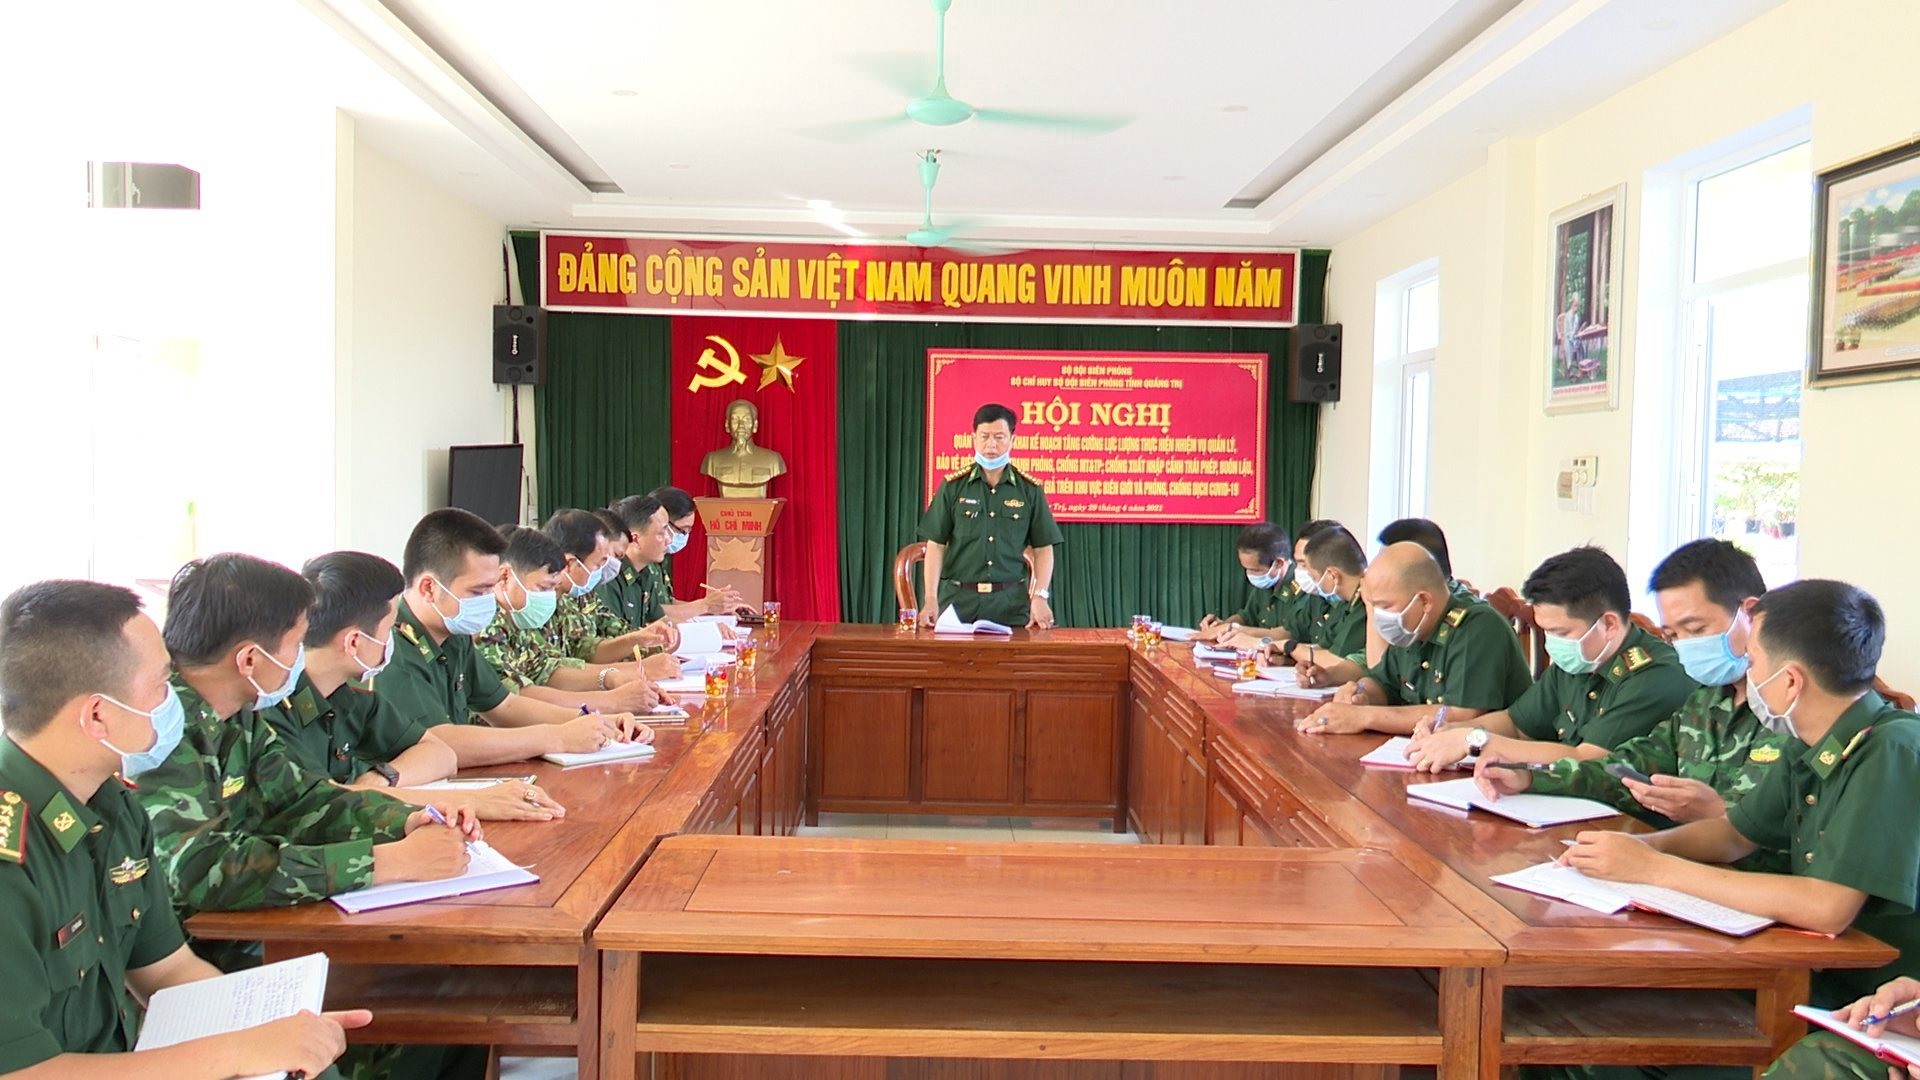 Đại tá Lê Văn Phương, Chỉ huy trưởng BĐBP Quảng Trị làm việc với Đồn Biên phòng CKQT Lao Bảo.